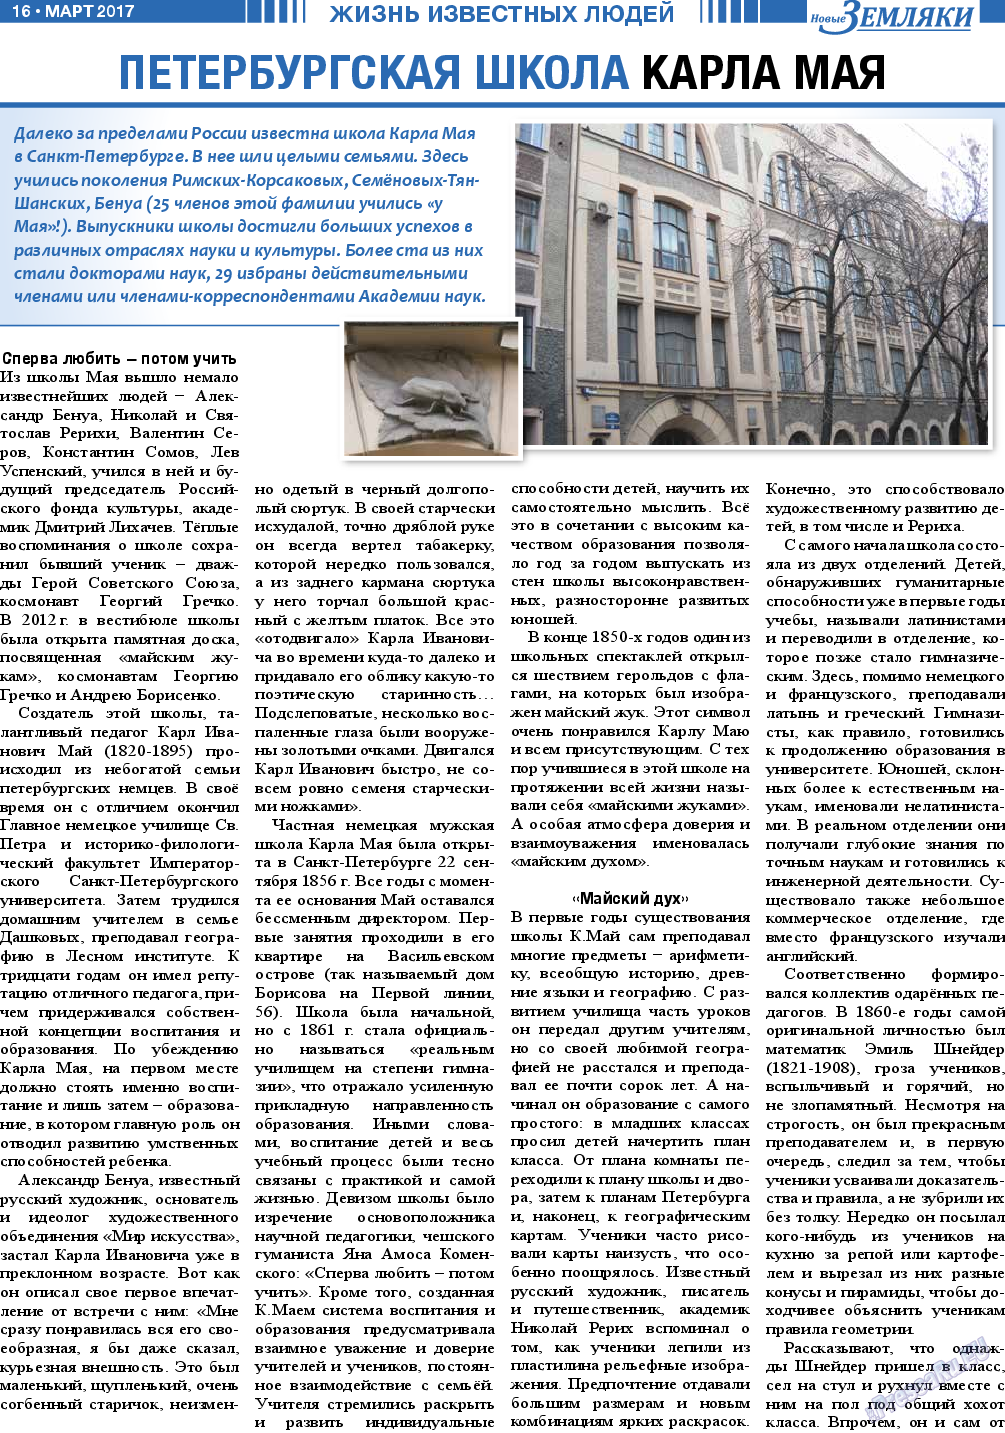 Новые Земляки, газета. 2017 №3 стр.16